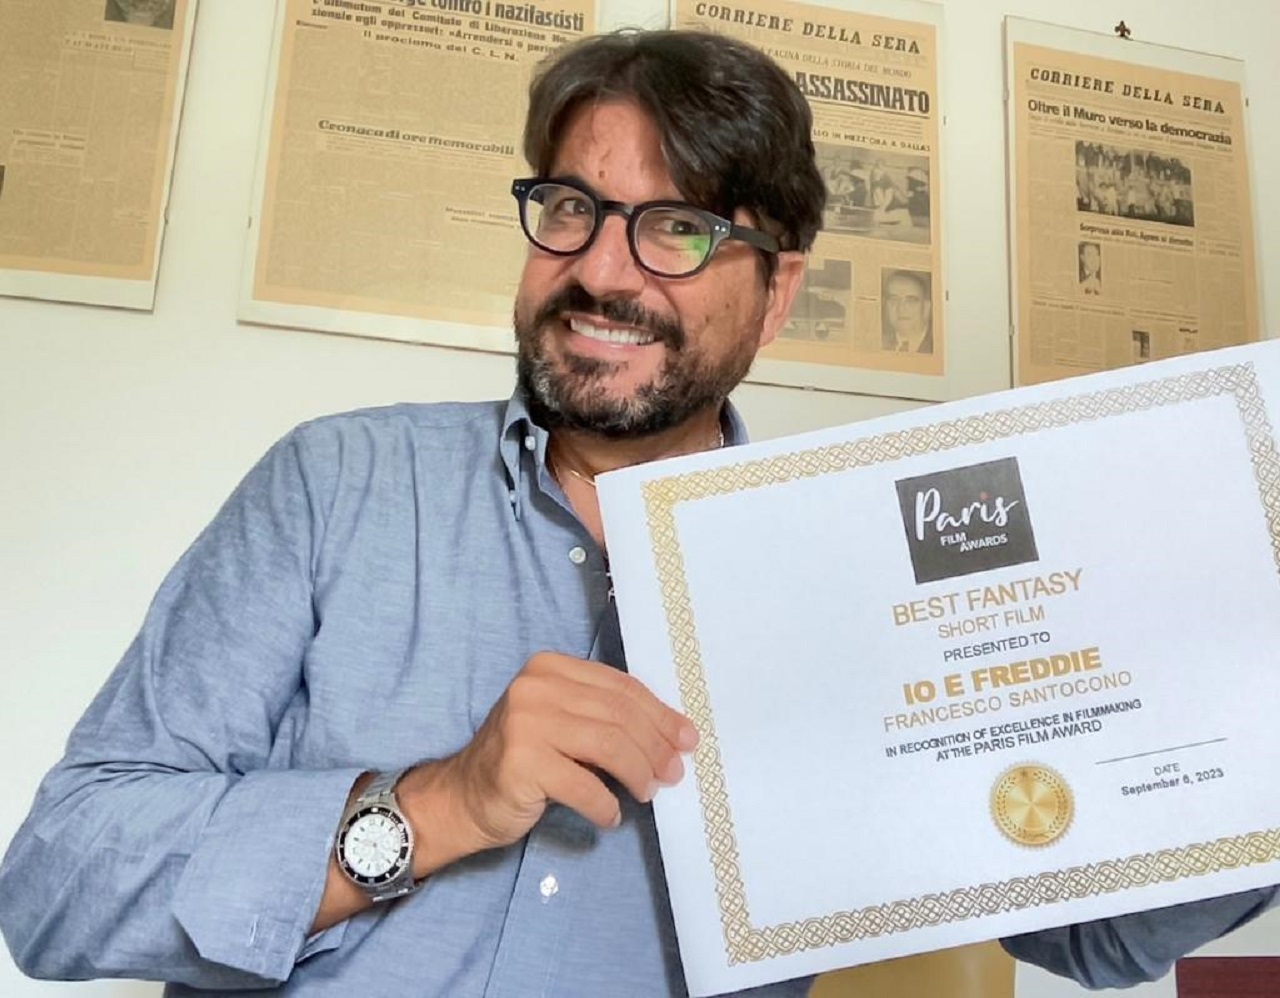 Cortometraggio contro l’Aids di Francesco Santocono vince il Premio “Best Fantasy” al “Paris Movie Award”